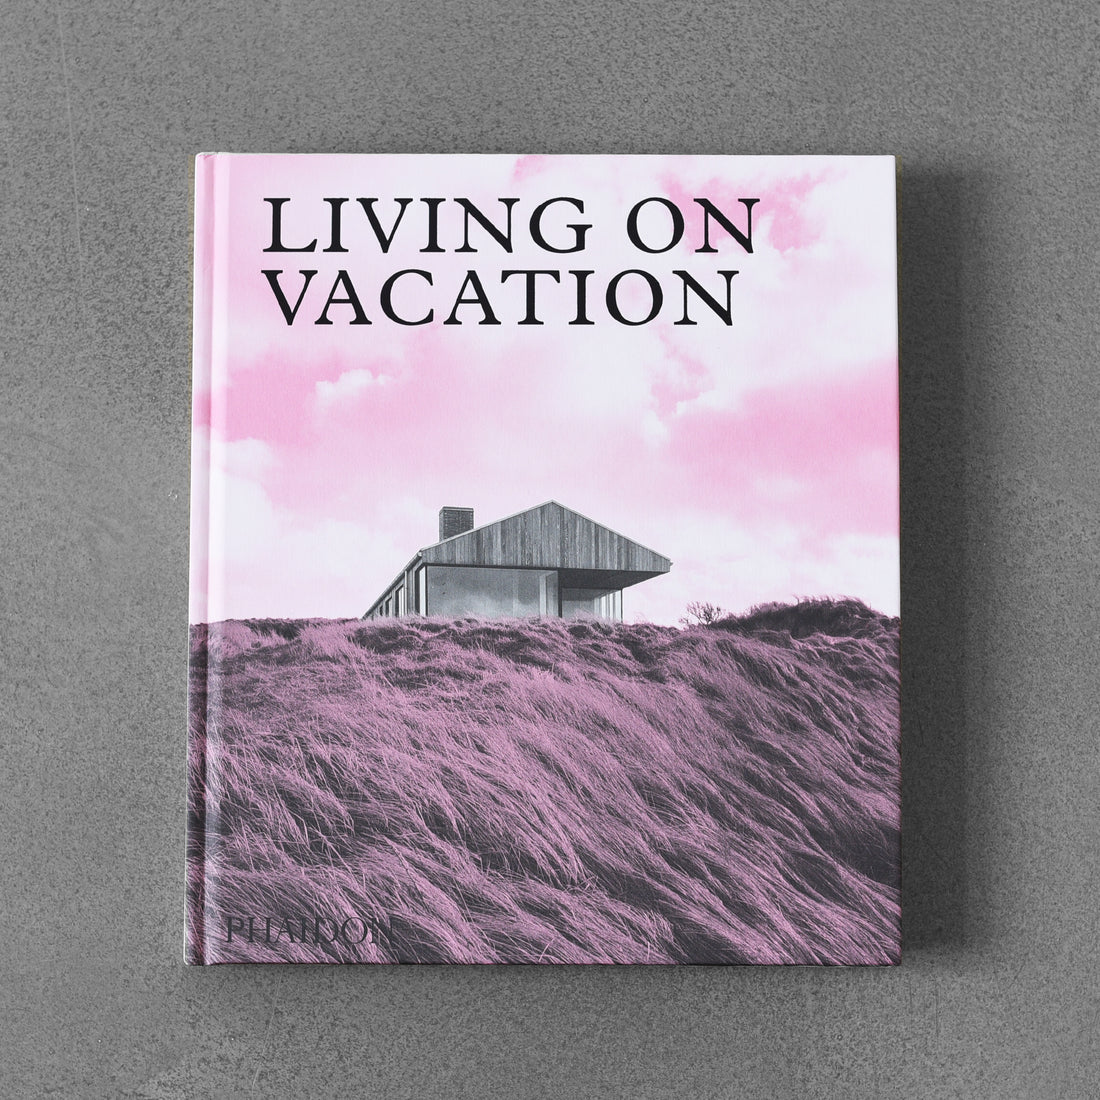 Życie na wakacjach: współczesne domy zapewniające spokojne życie